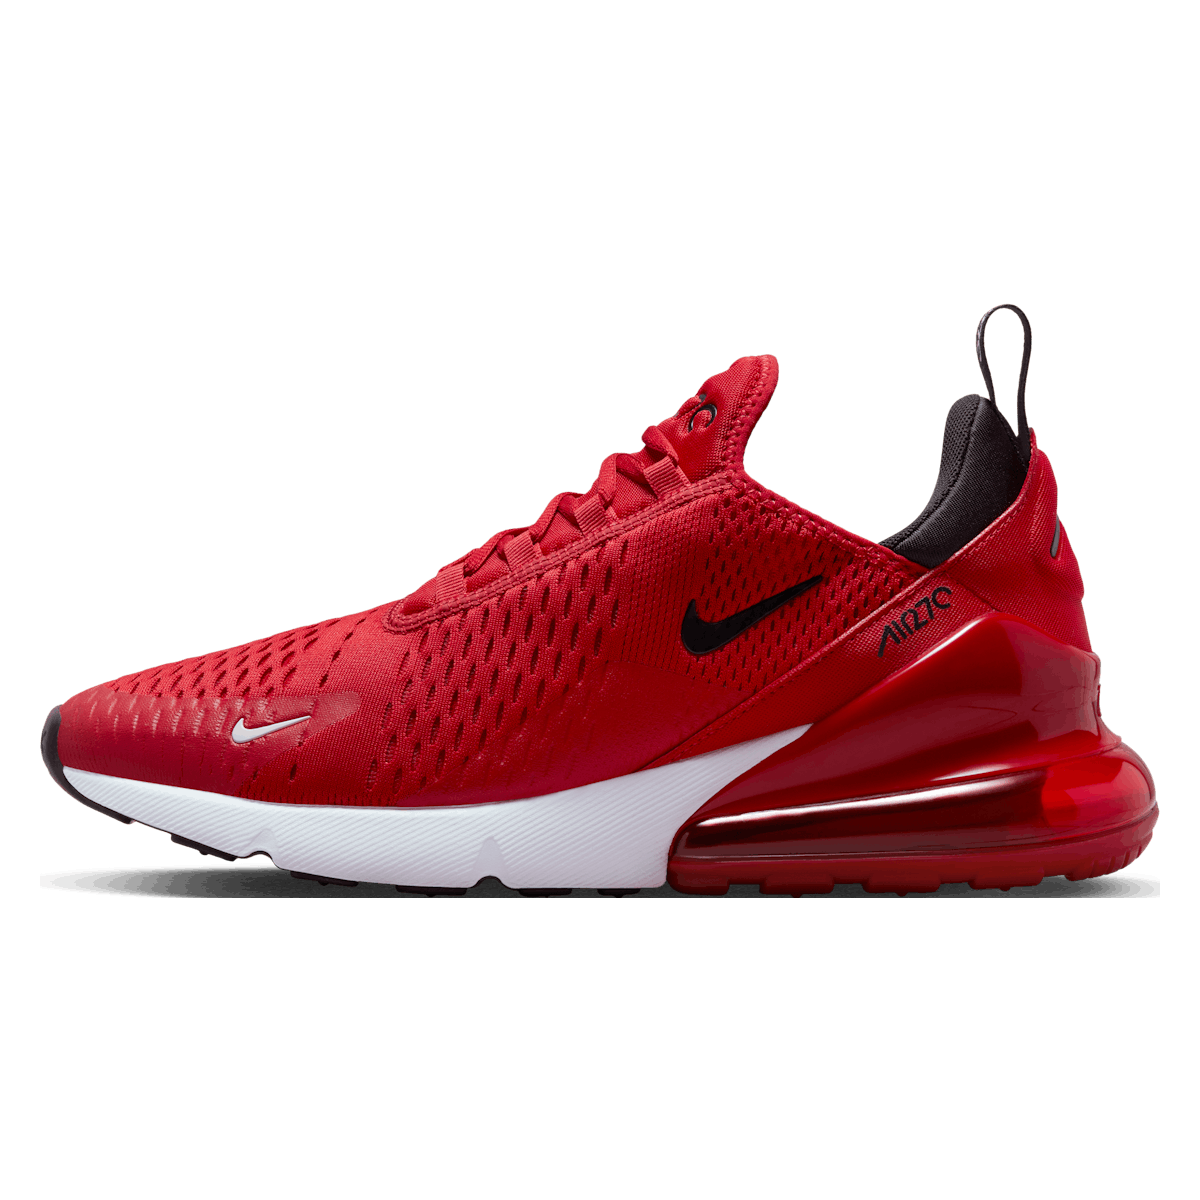 Nike Air Max 270 "Bright Crimson"